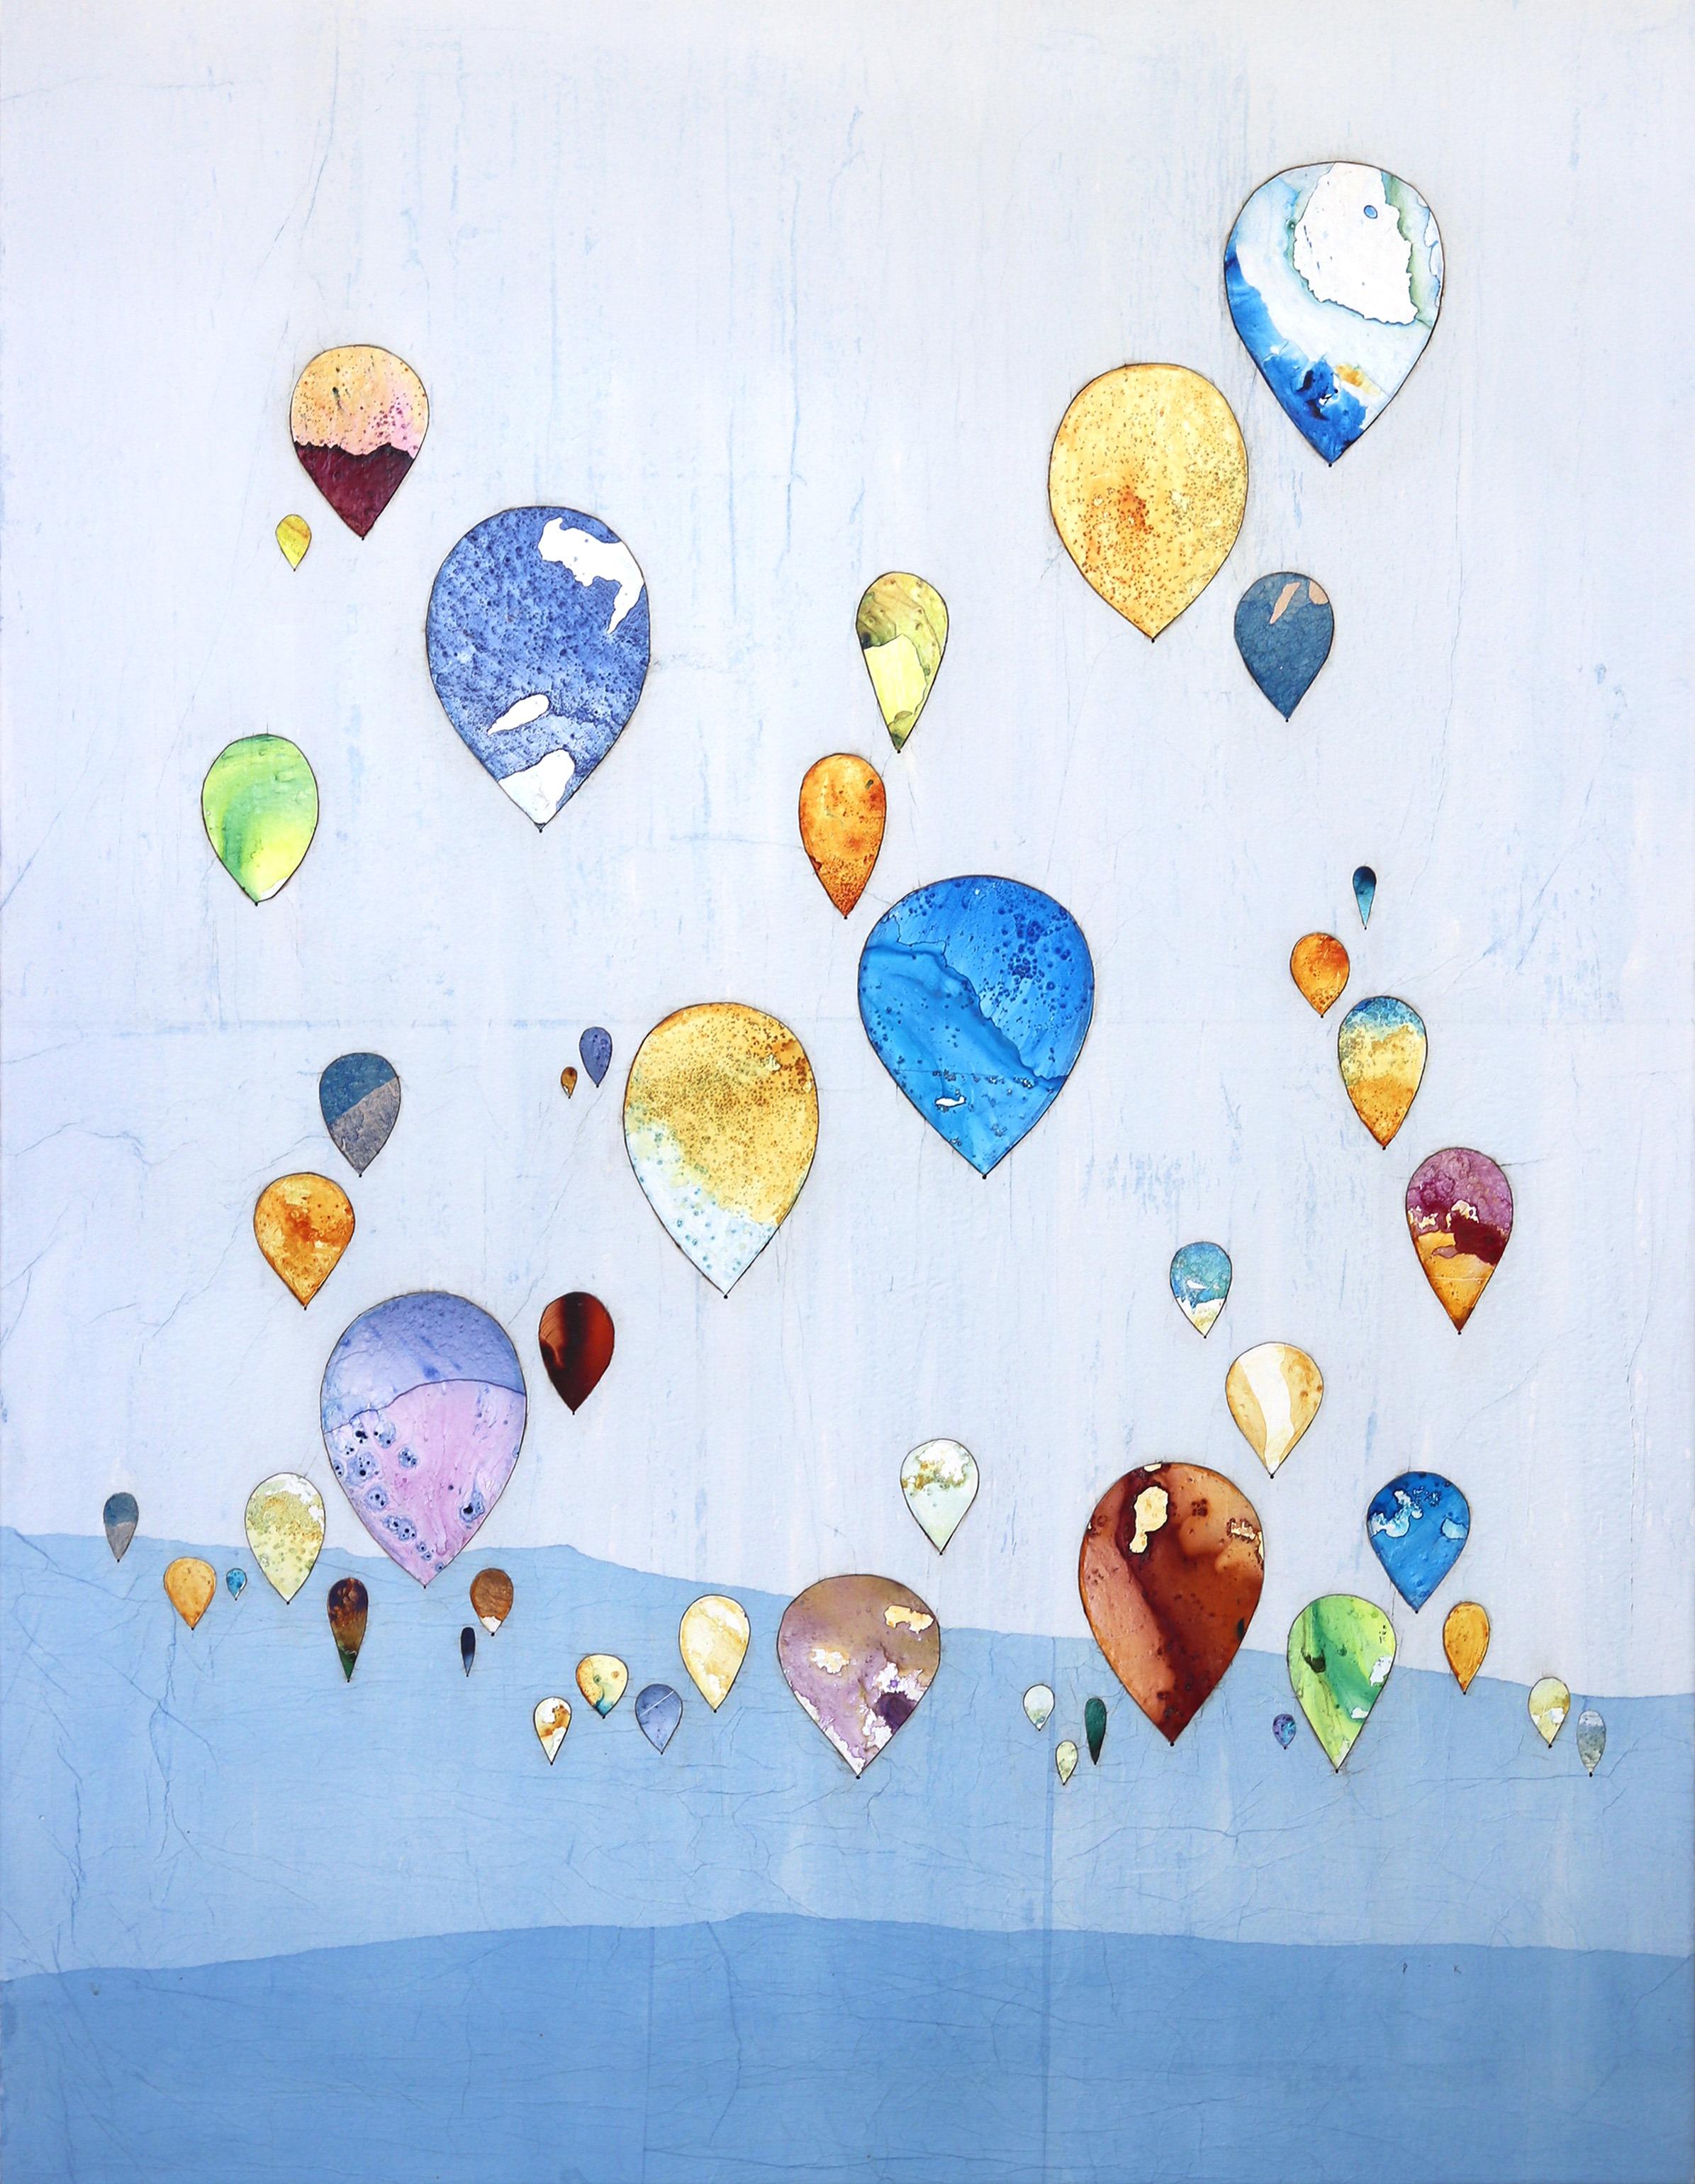 Mit fliegenden Farben - Großes Original Boho Minimalistisches Landschaftsballon-Kunstwerk mit fliegenden Farben